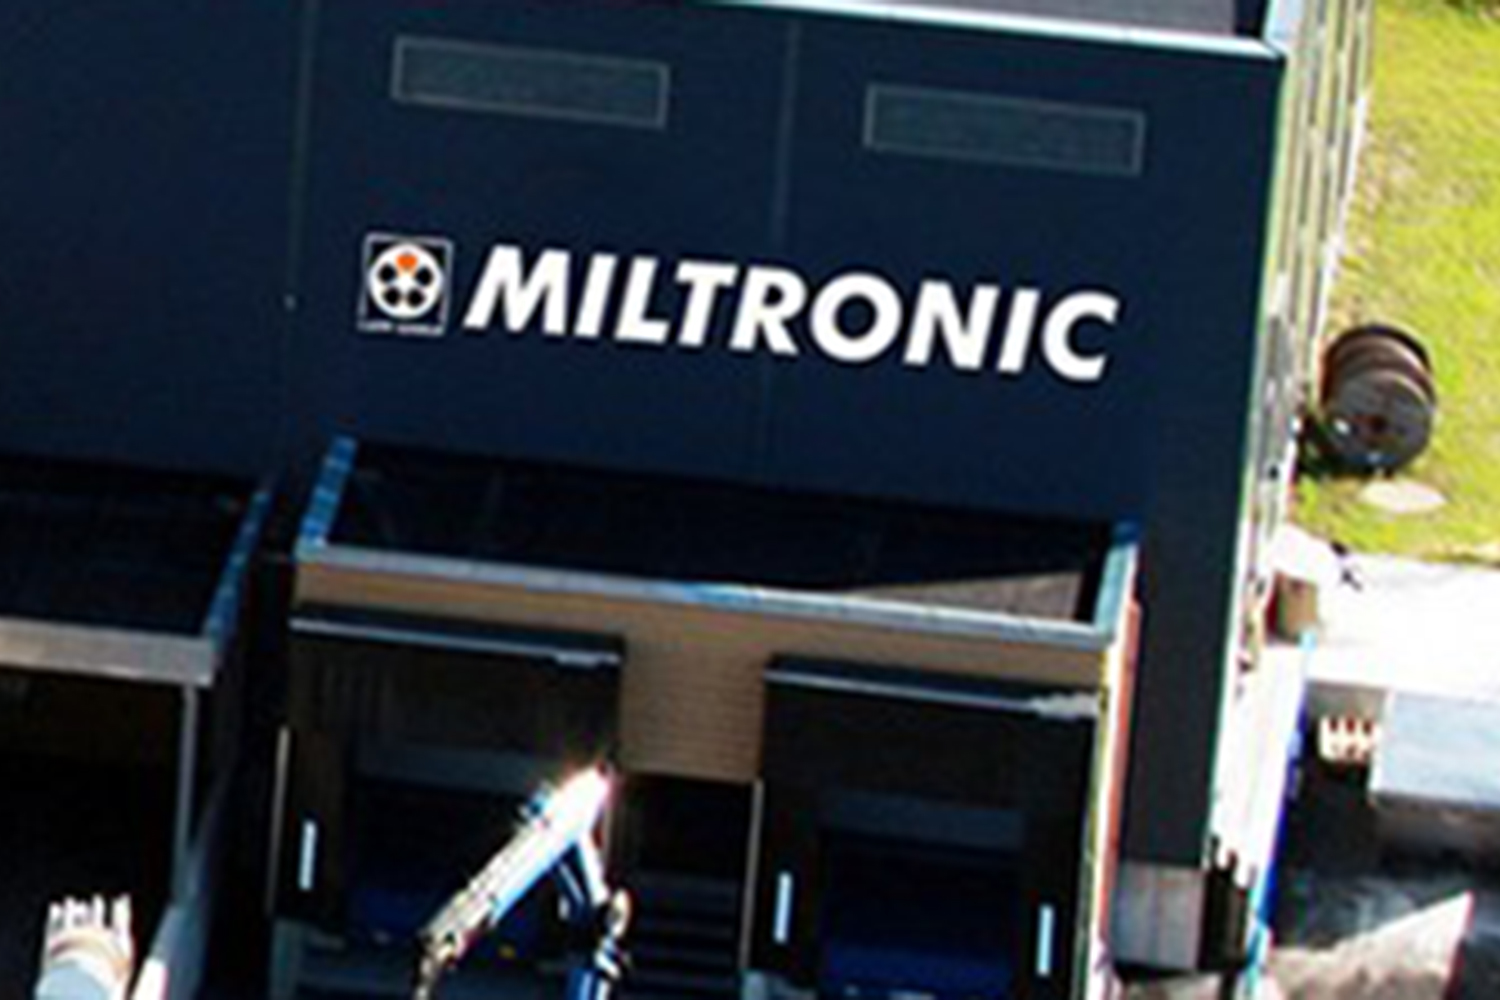 Samsvarsvurdering For Miltronic